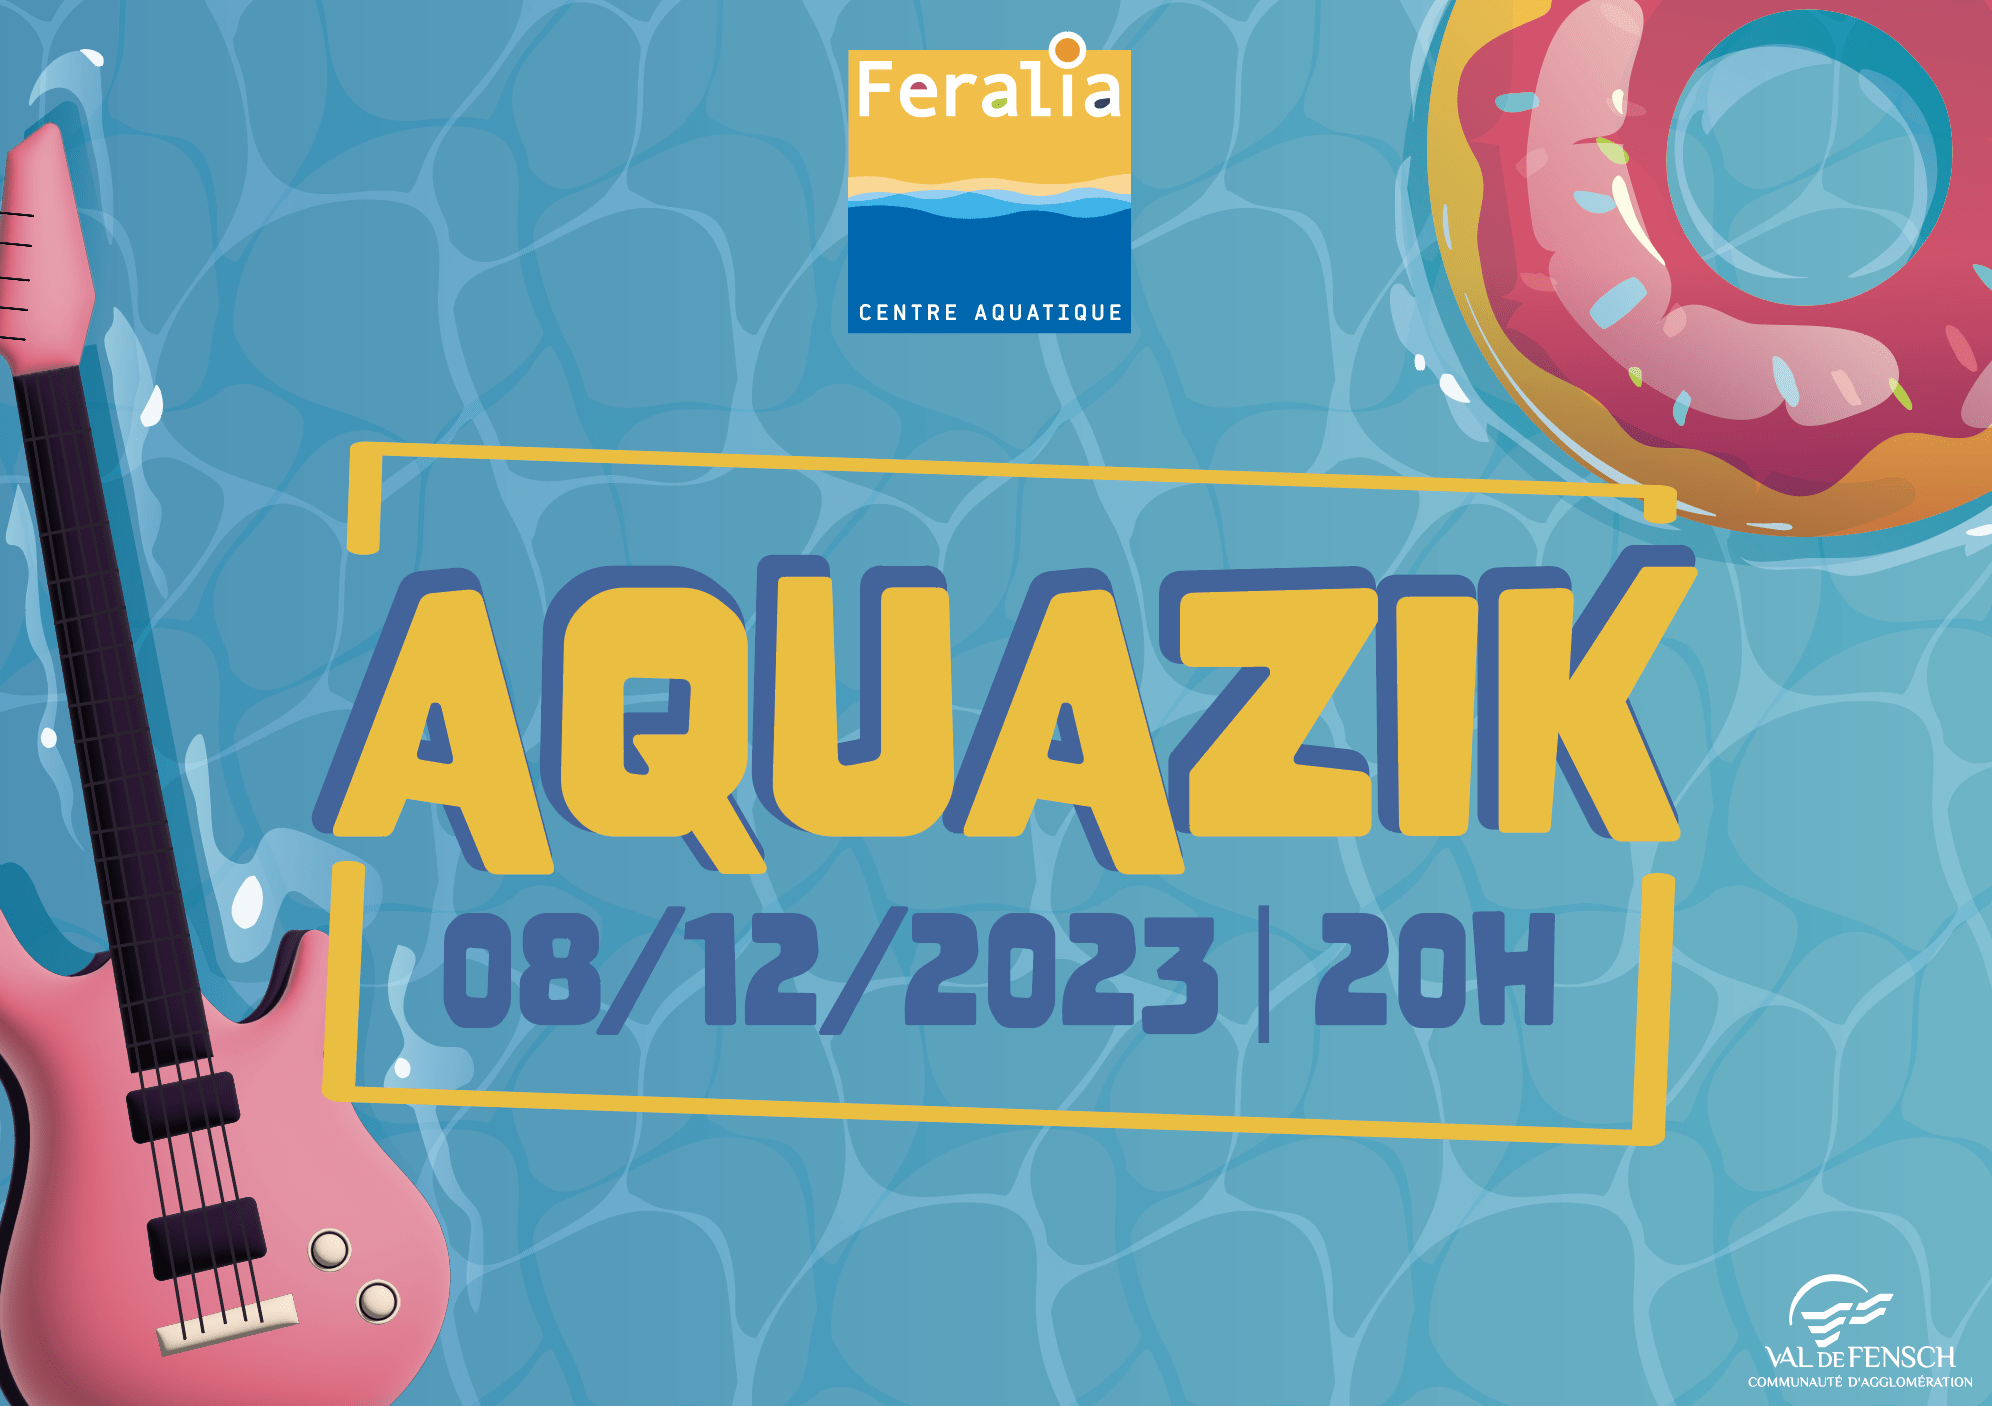 Aquazik à Feralia le 08/12